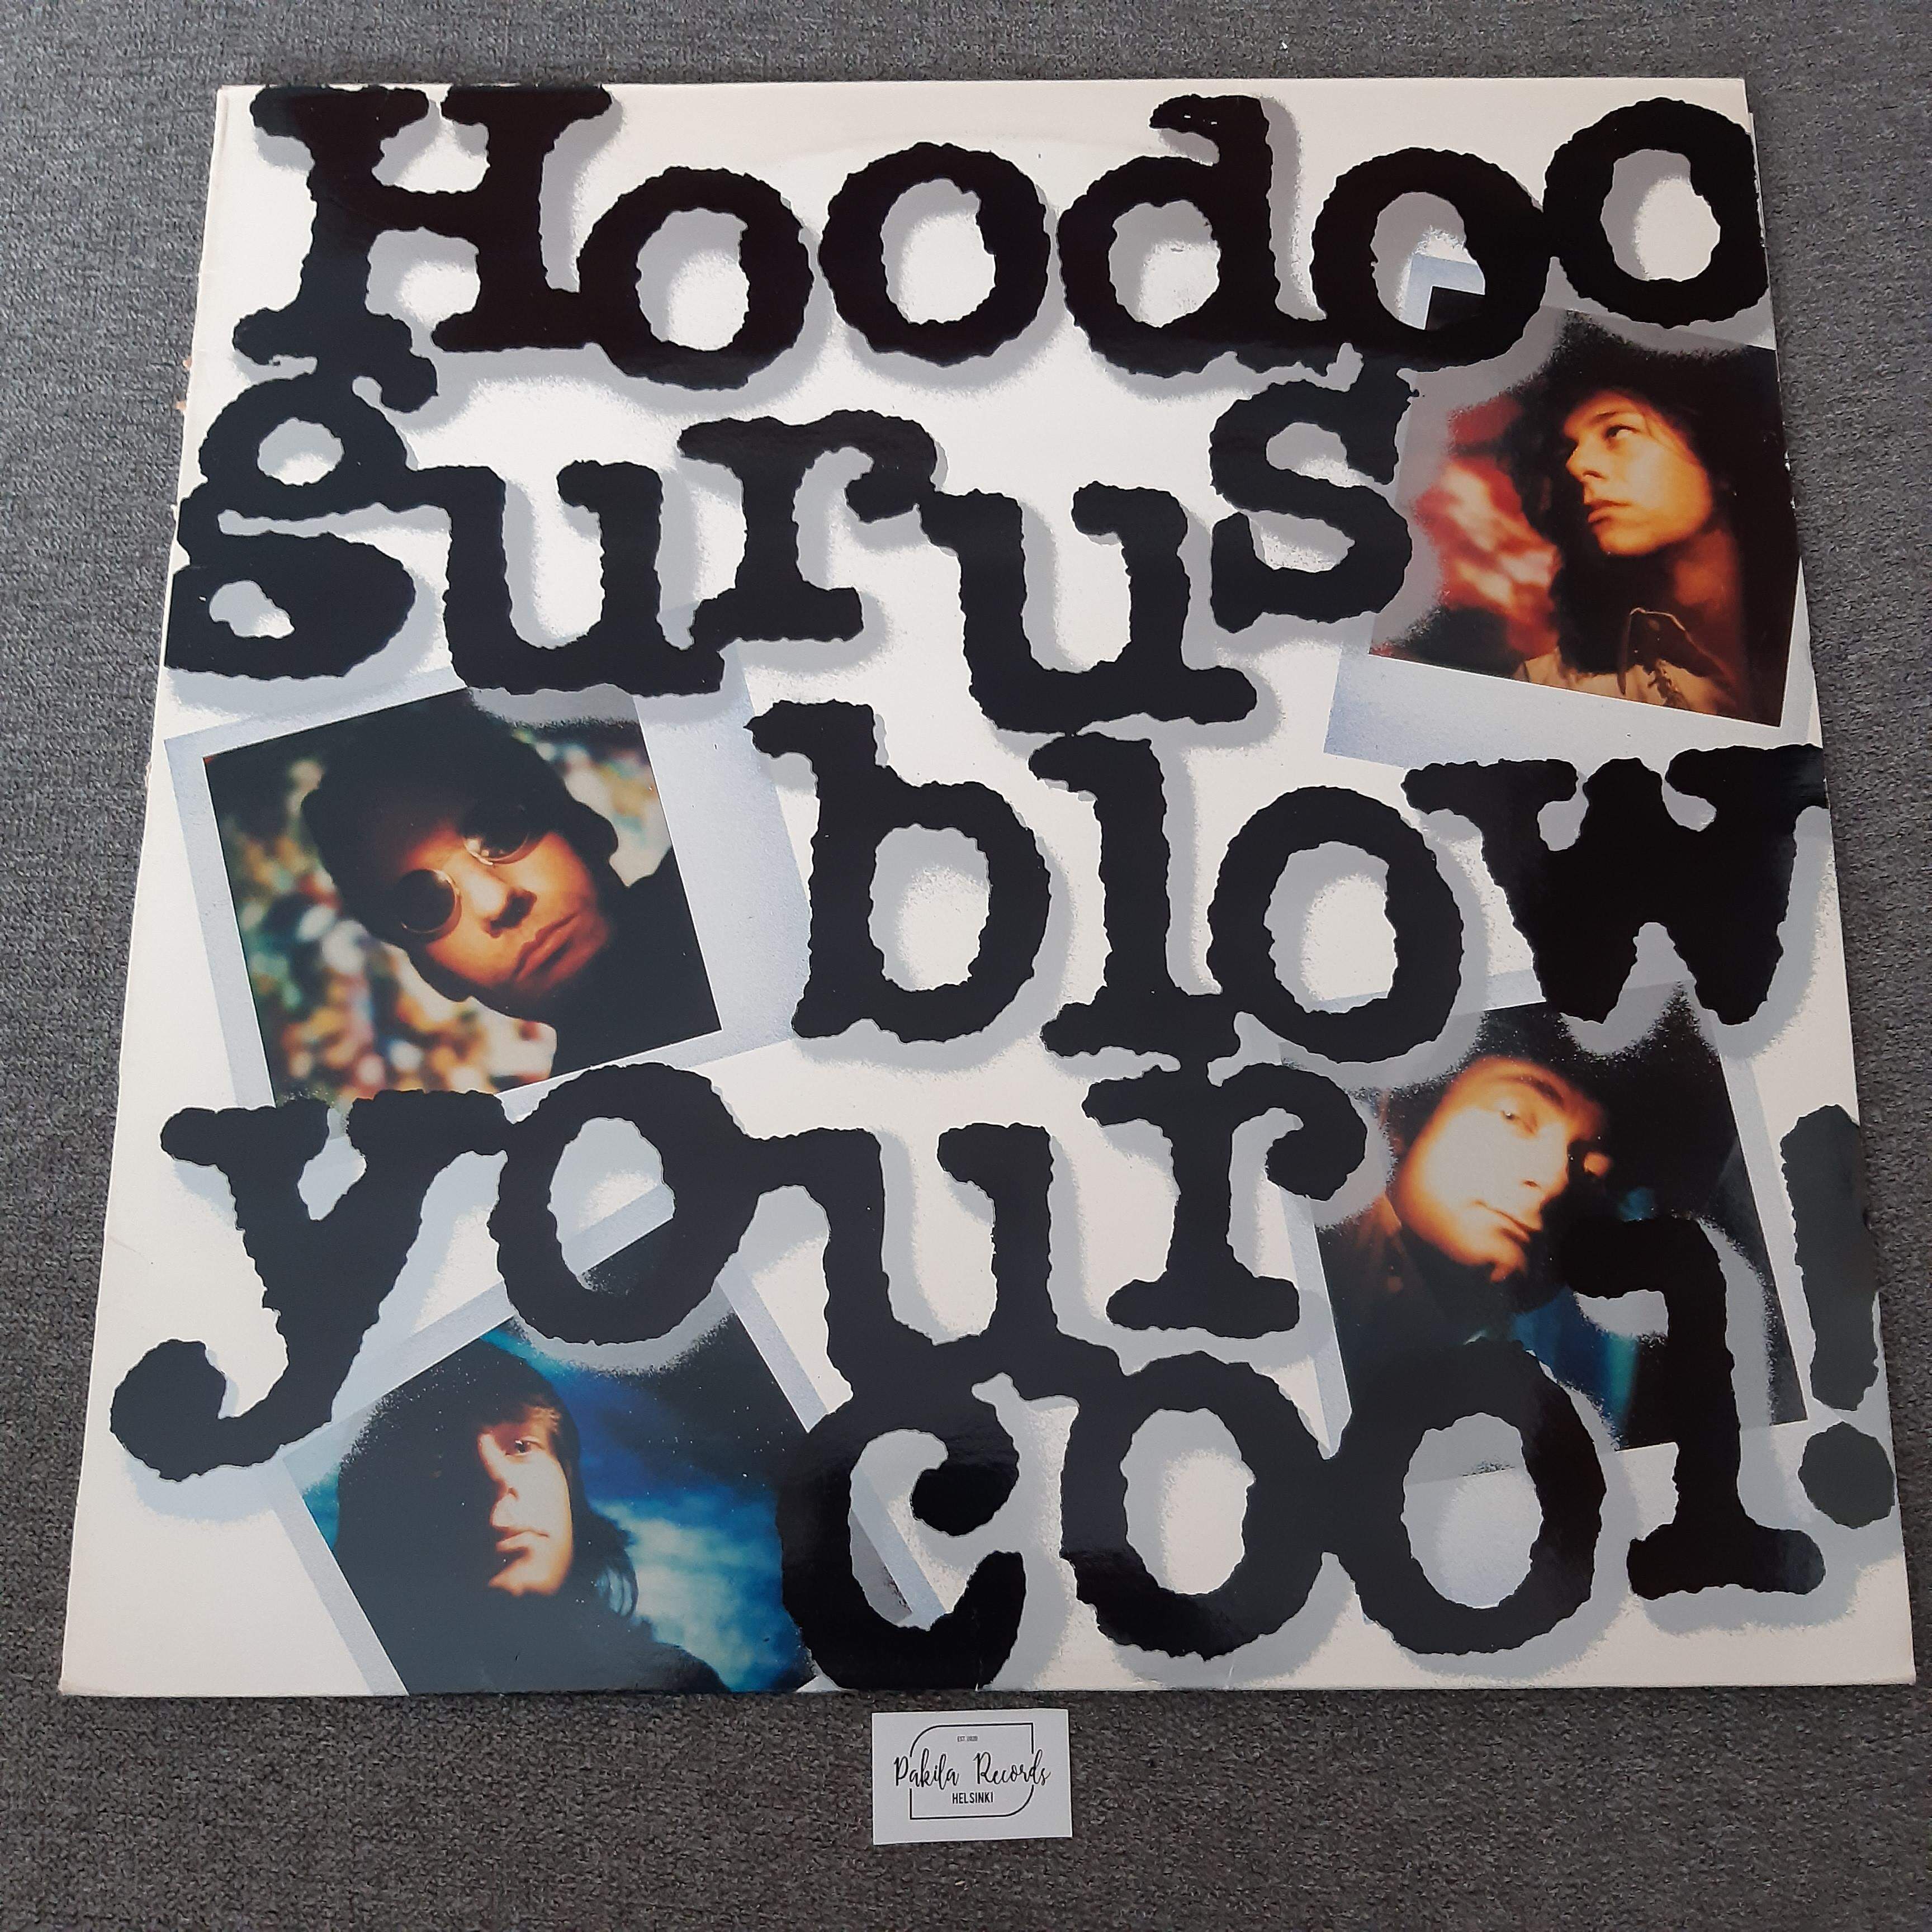 Hoodoo Gurus - Blow Your Cool - LP (käytetty)